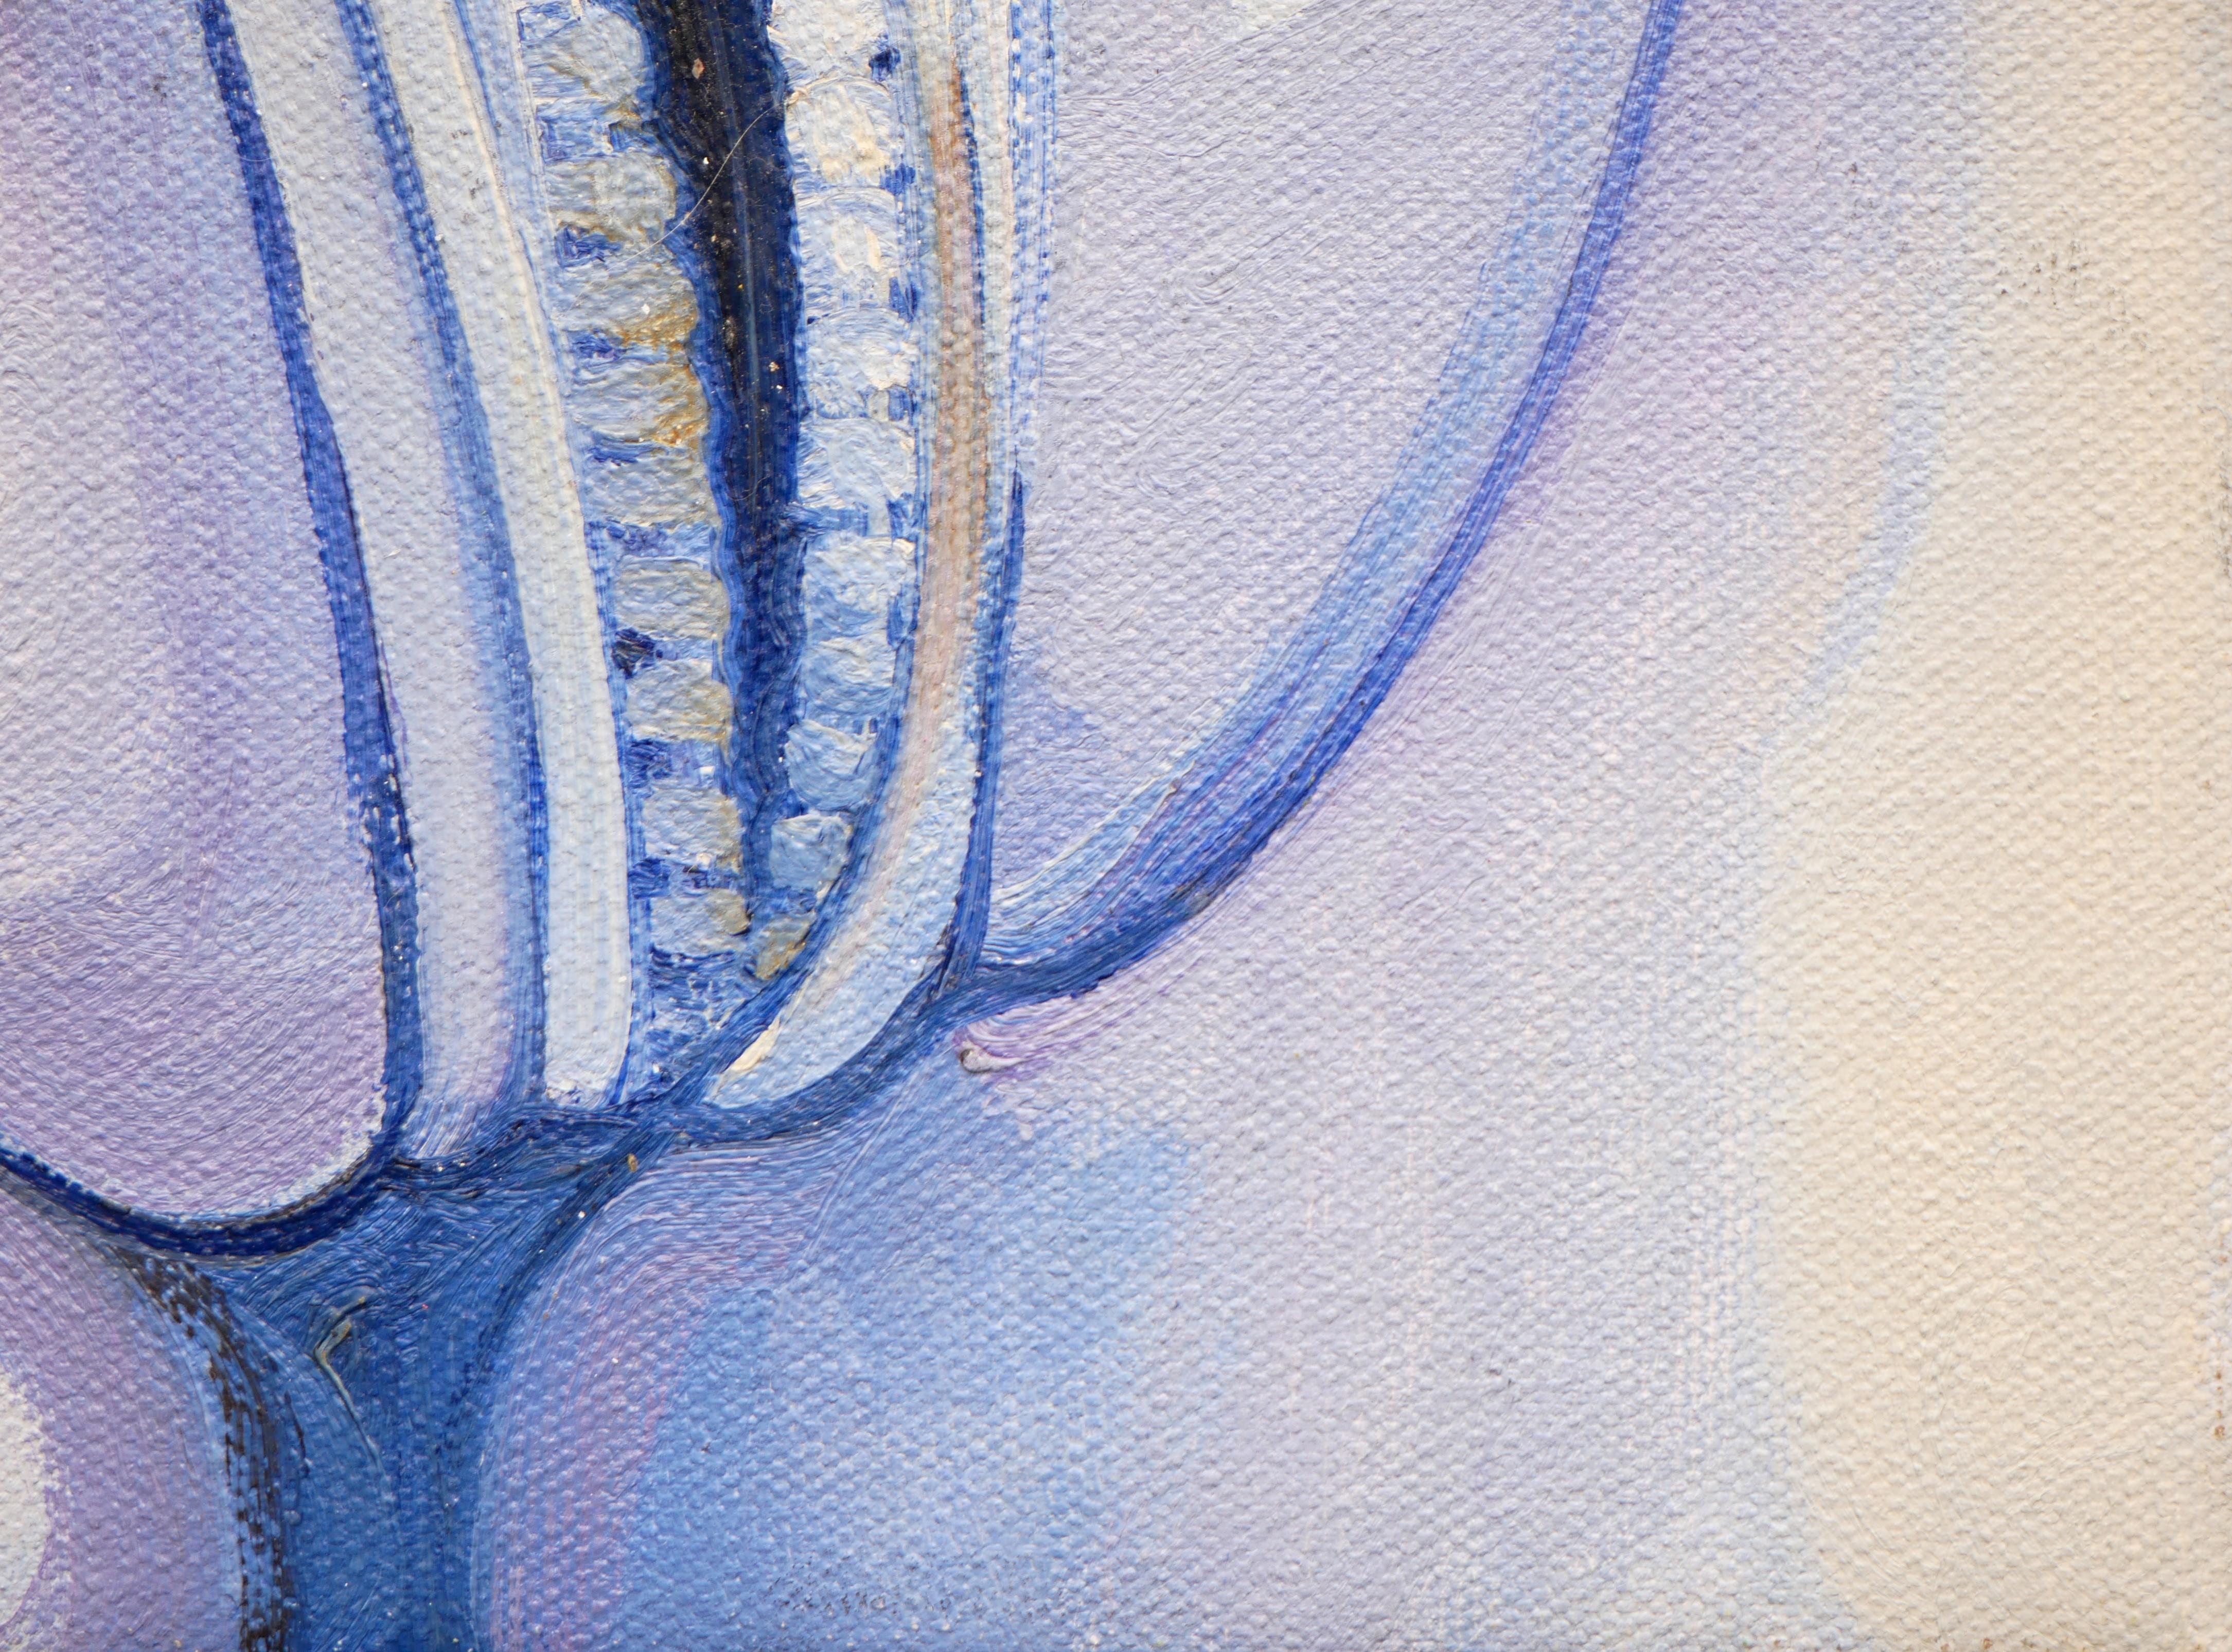 Surrealistisches Pastellgemälde in Blautönen des Künstlers Henry David Potwin. Dieses Werk zeigt einen vergrößerten, geöffneten Reißverschluss, der die Genitalien einer Frau darstellt. Signiert in der linken unteren Ecke. Rückseitig betitelt und